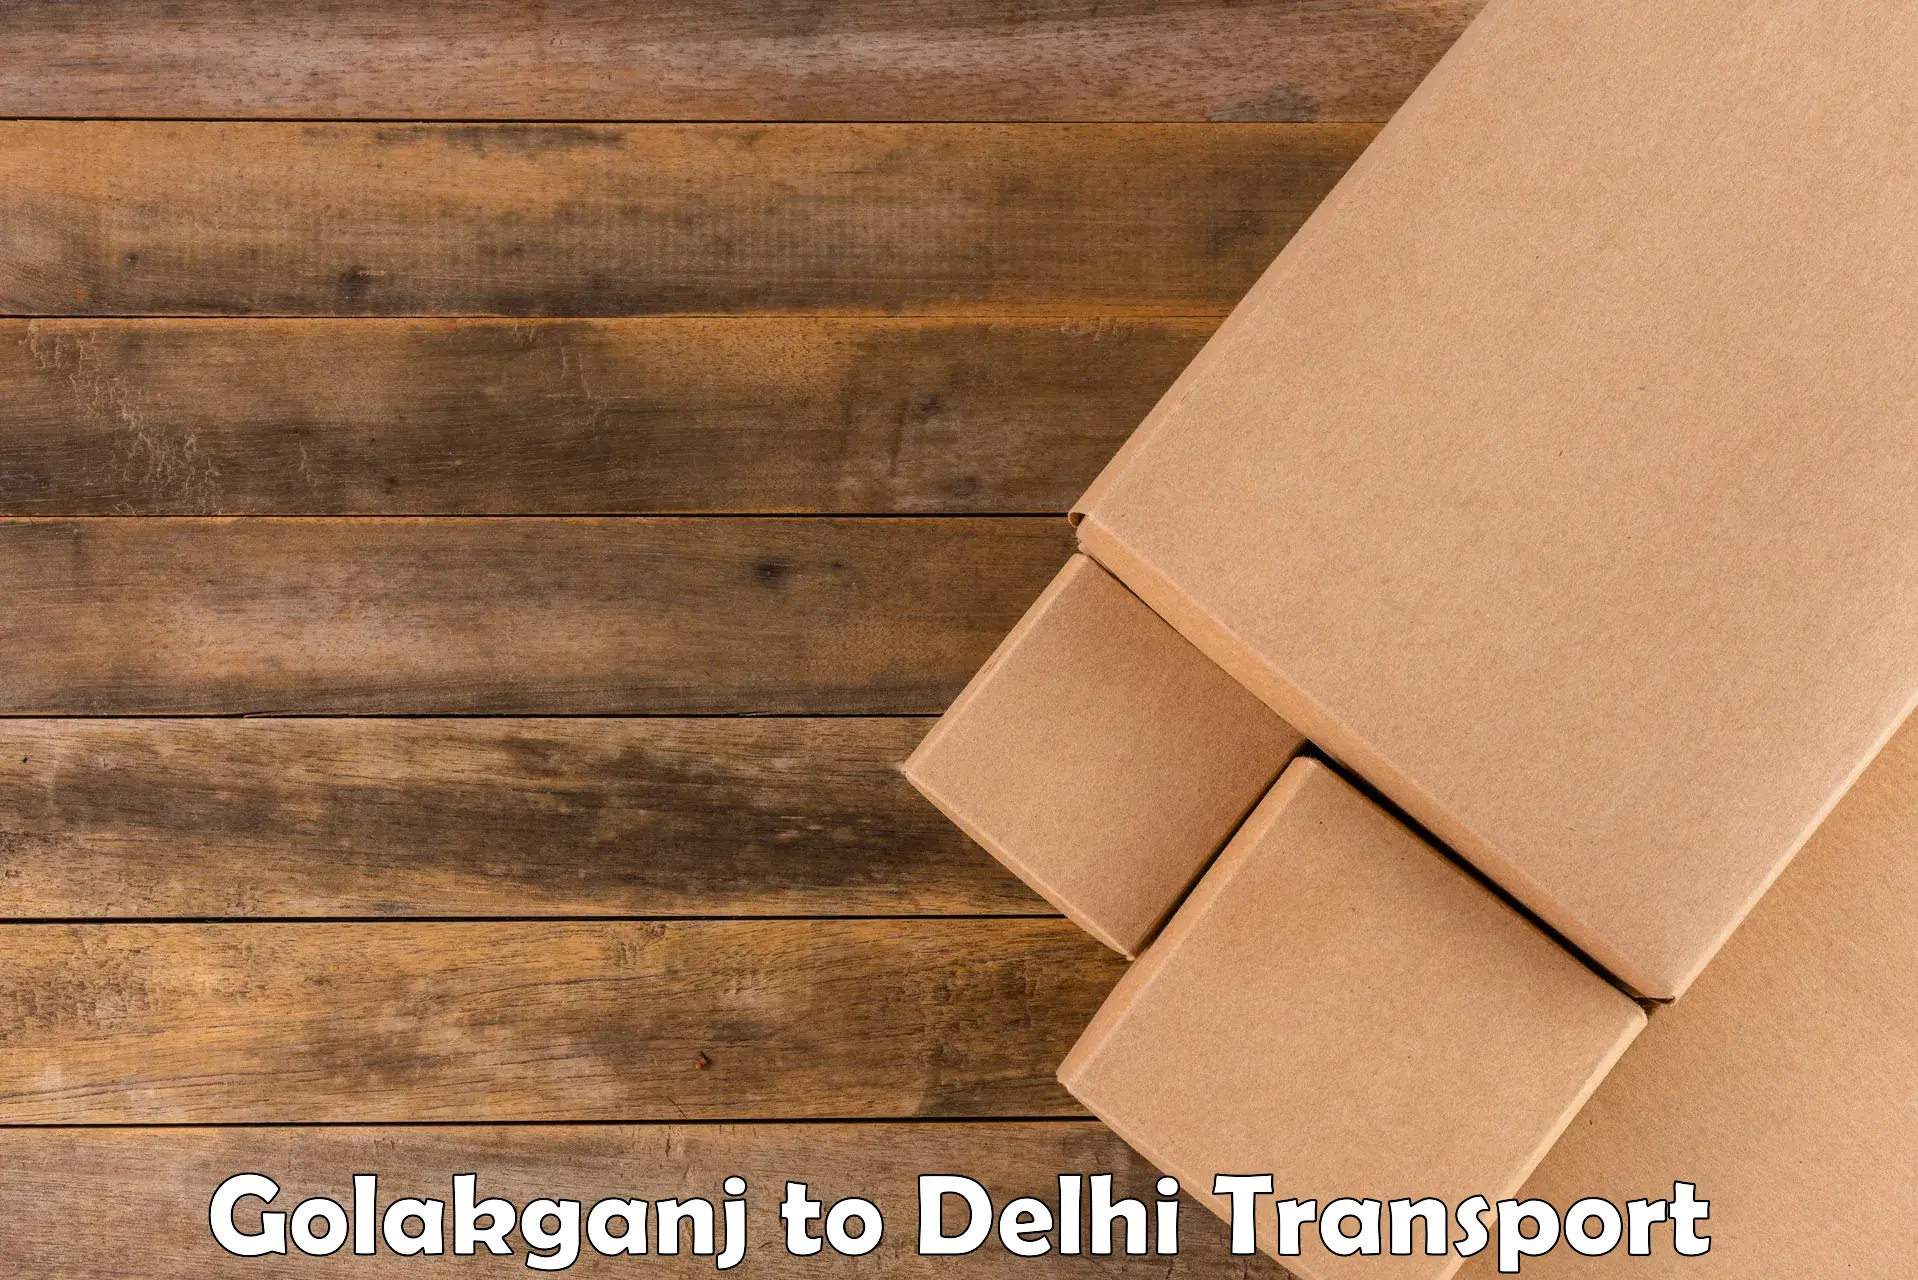 Cargo transportation services Golakganj to Kalkaji